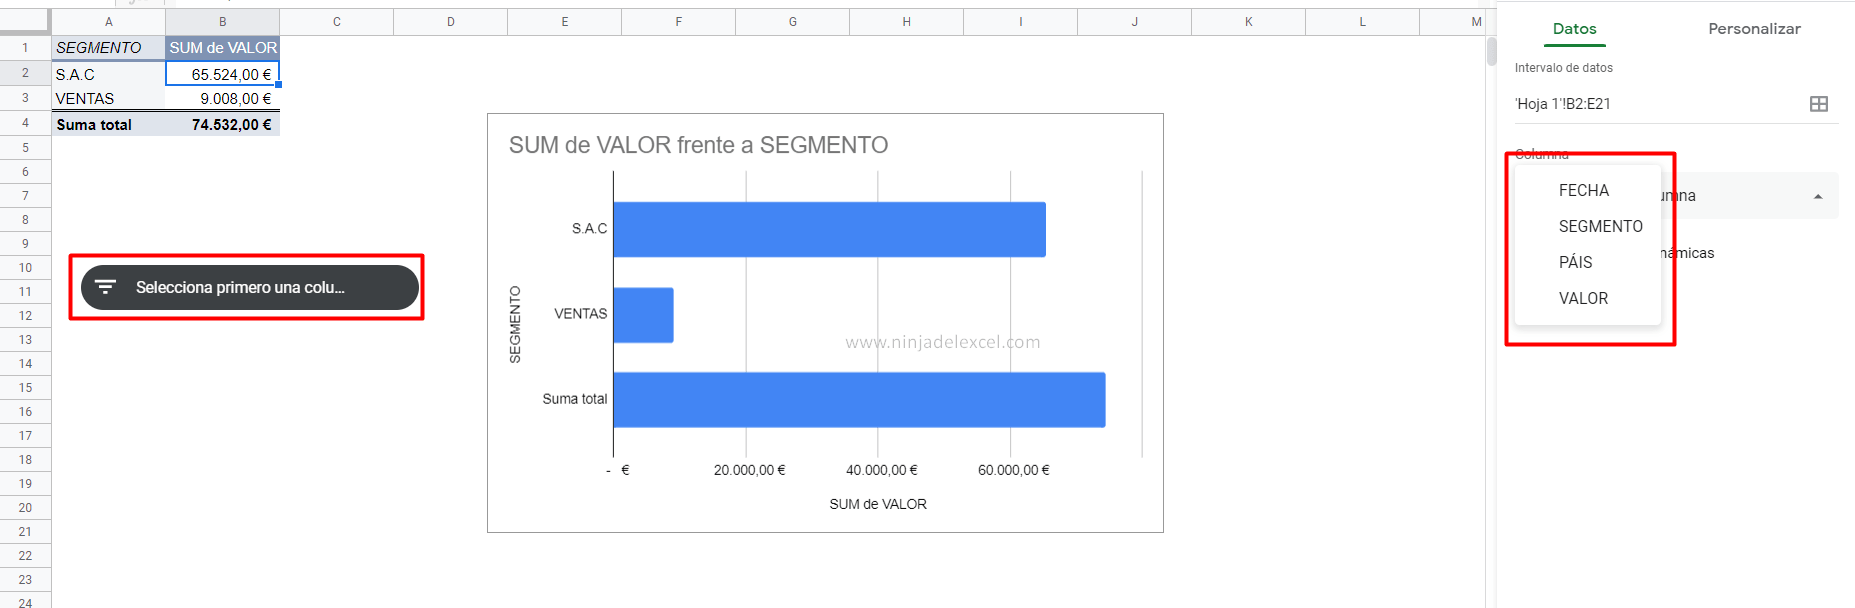 Como Hacer Segmentación de Datos en Google Sheets